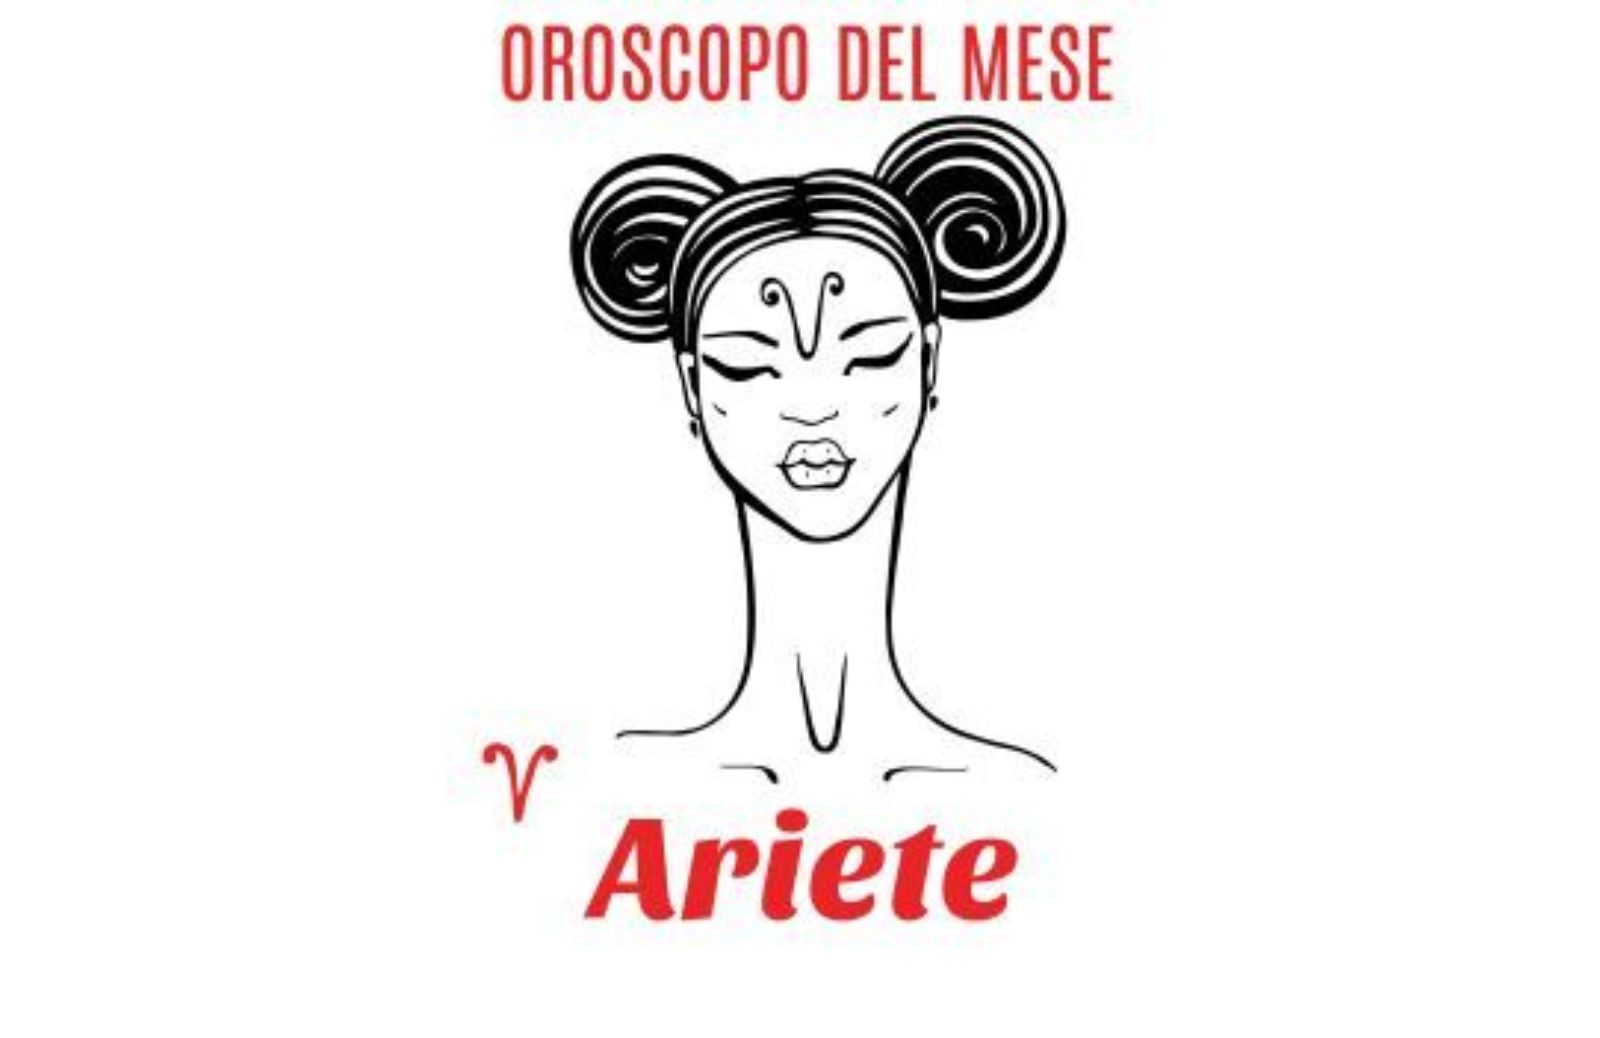 Oroscopo del mese: Ariete - marzo 2020